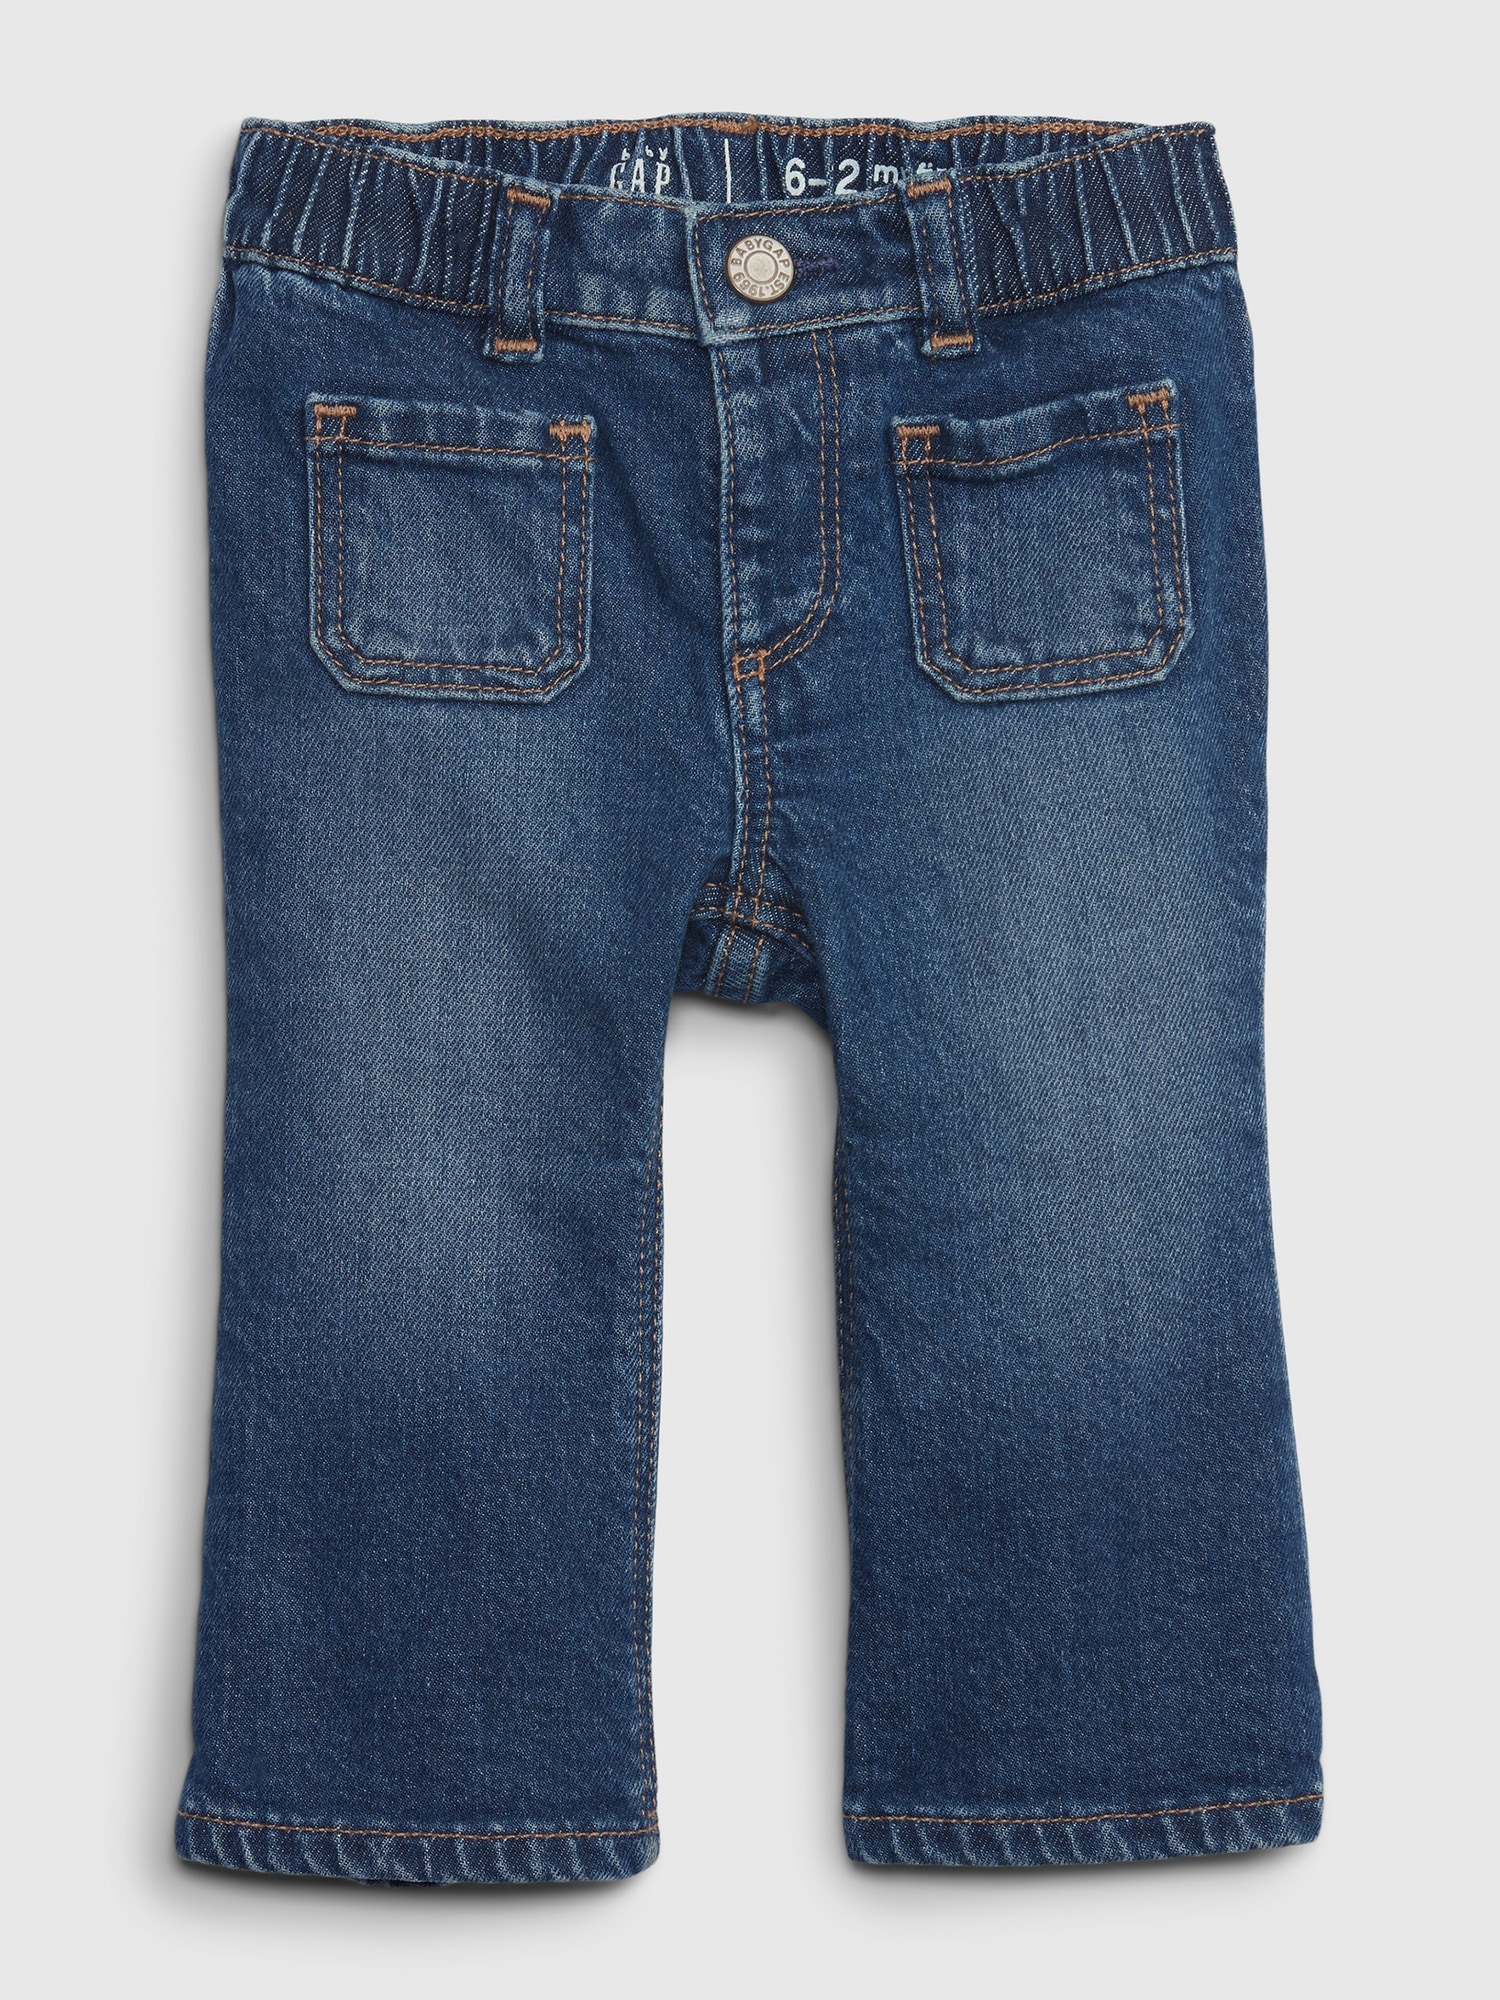 GAP Cotton Pants − Sale: at $55.00+